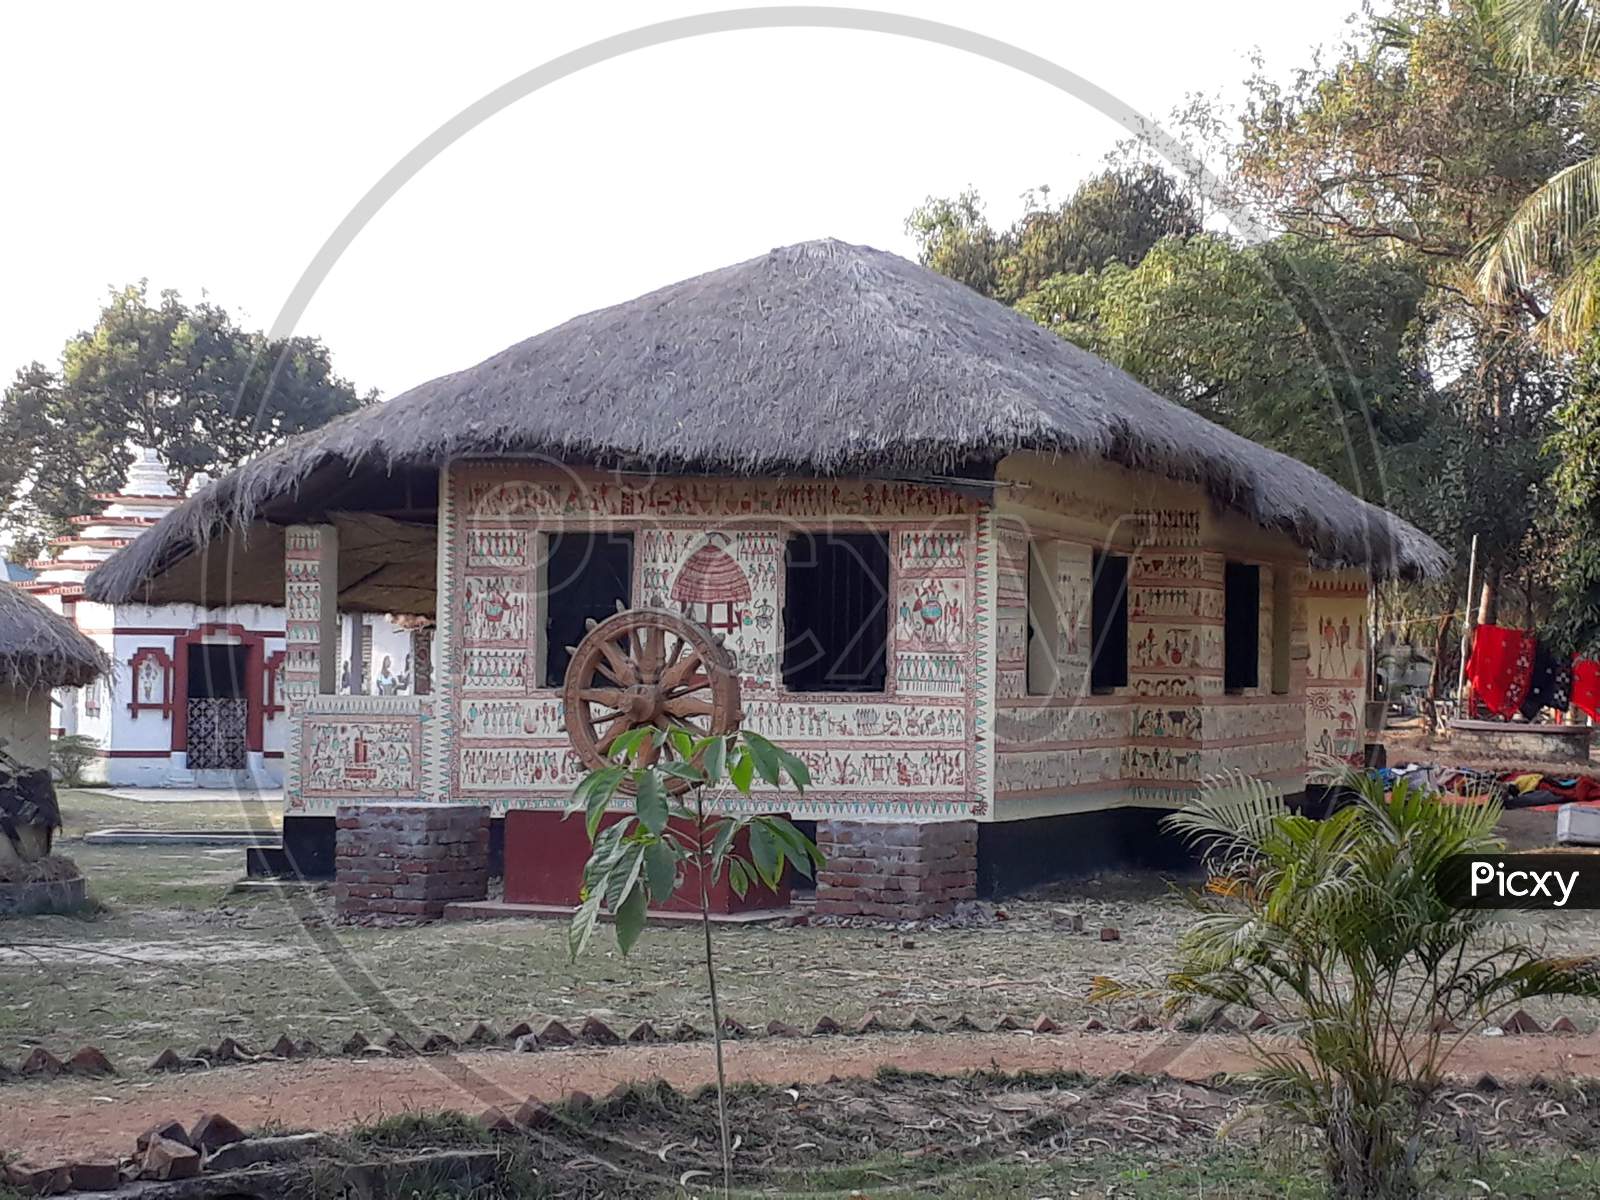 A hut made of artisans